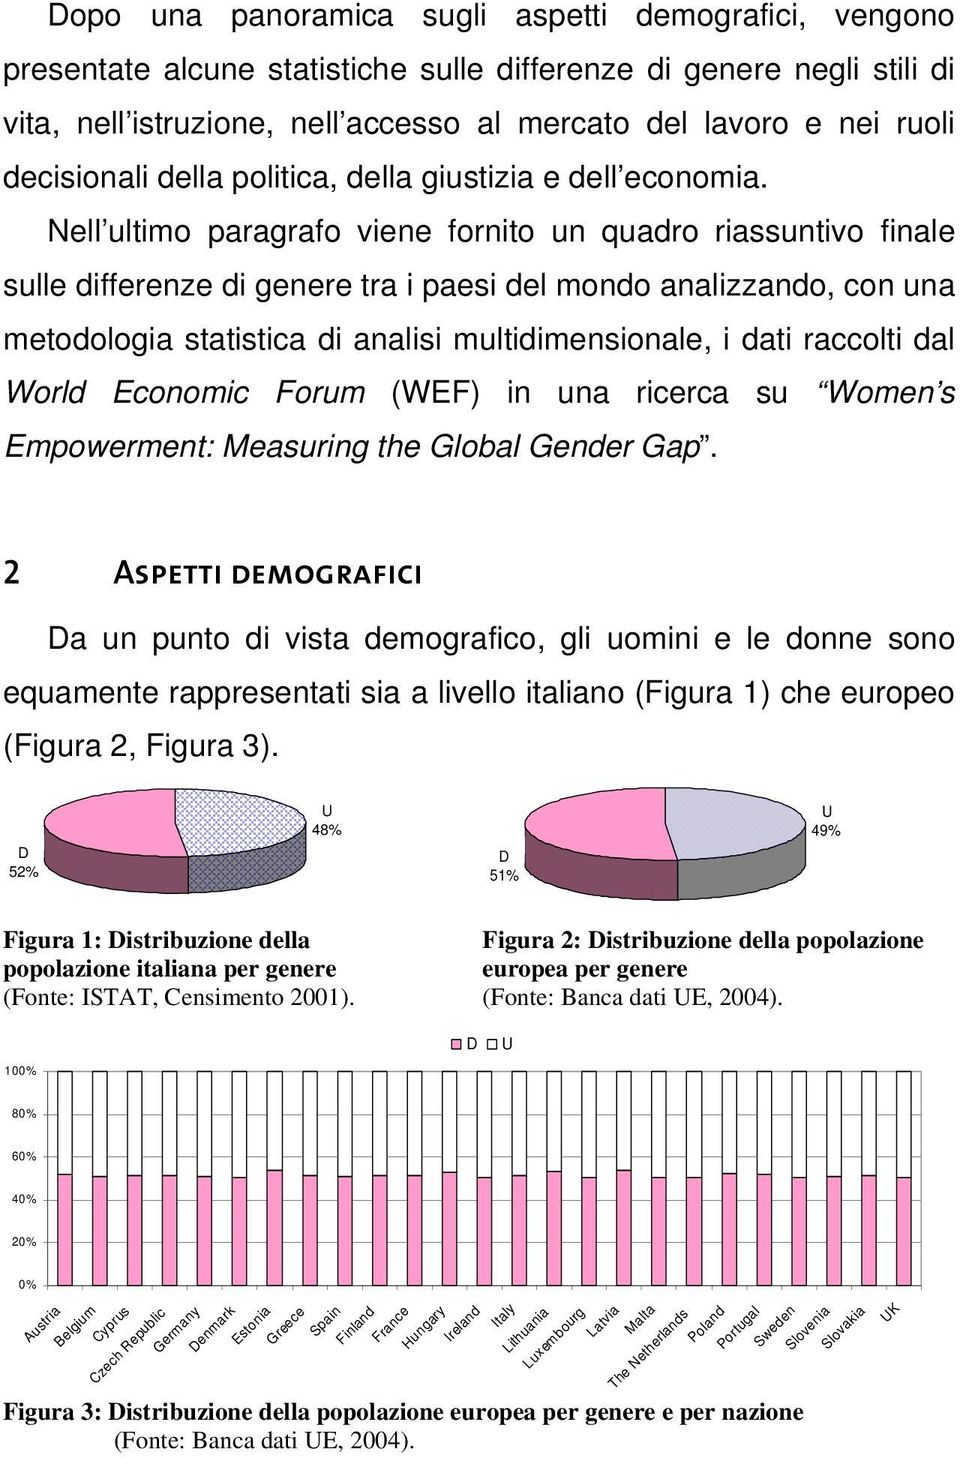 Nell ultimo paragrafo viene fornito un quadro riassuntivo finale sulle differenze di genere tra i paesi del mondo analizzando, con una metodologia statistica di analisi multidimensionale, i dati